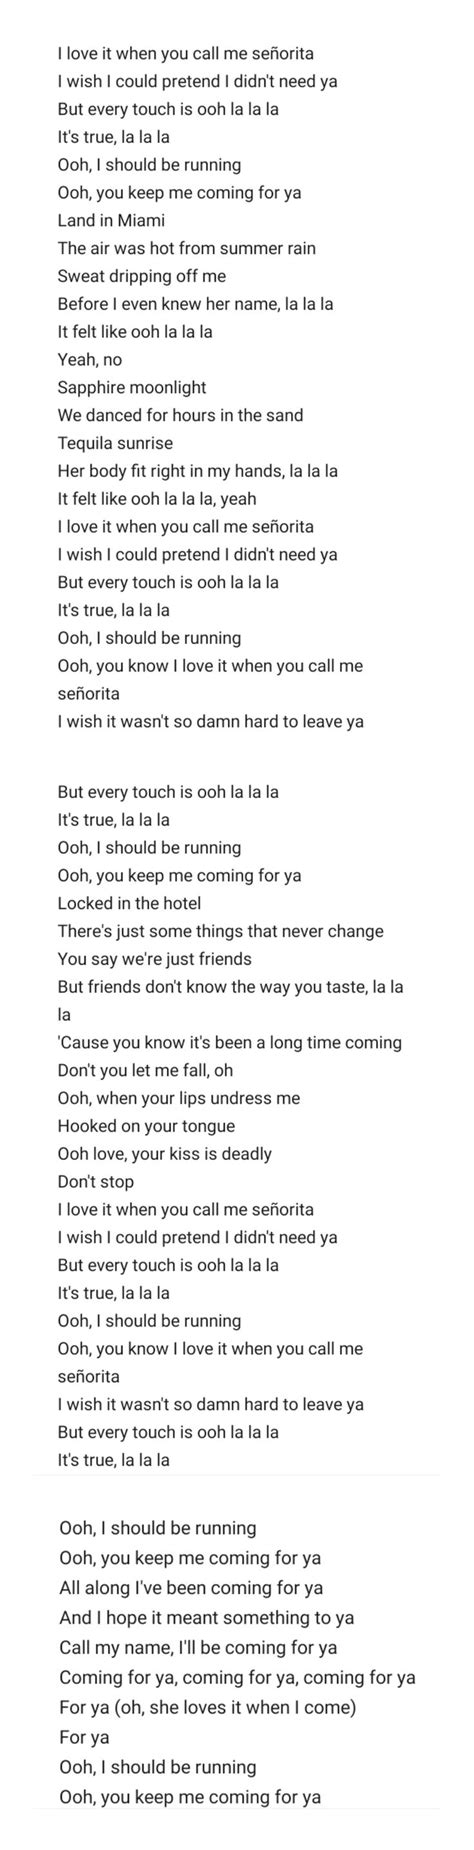 senorita lyrics lyrics song lyrics songs